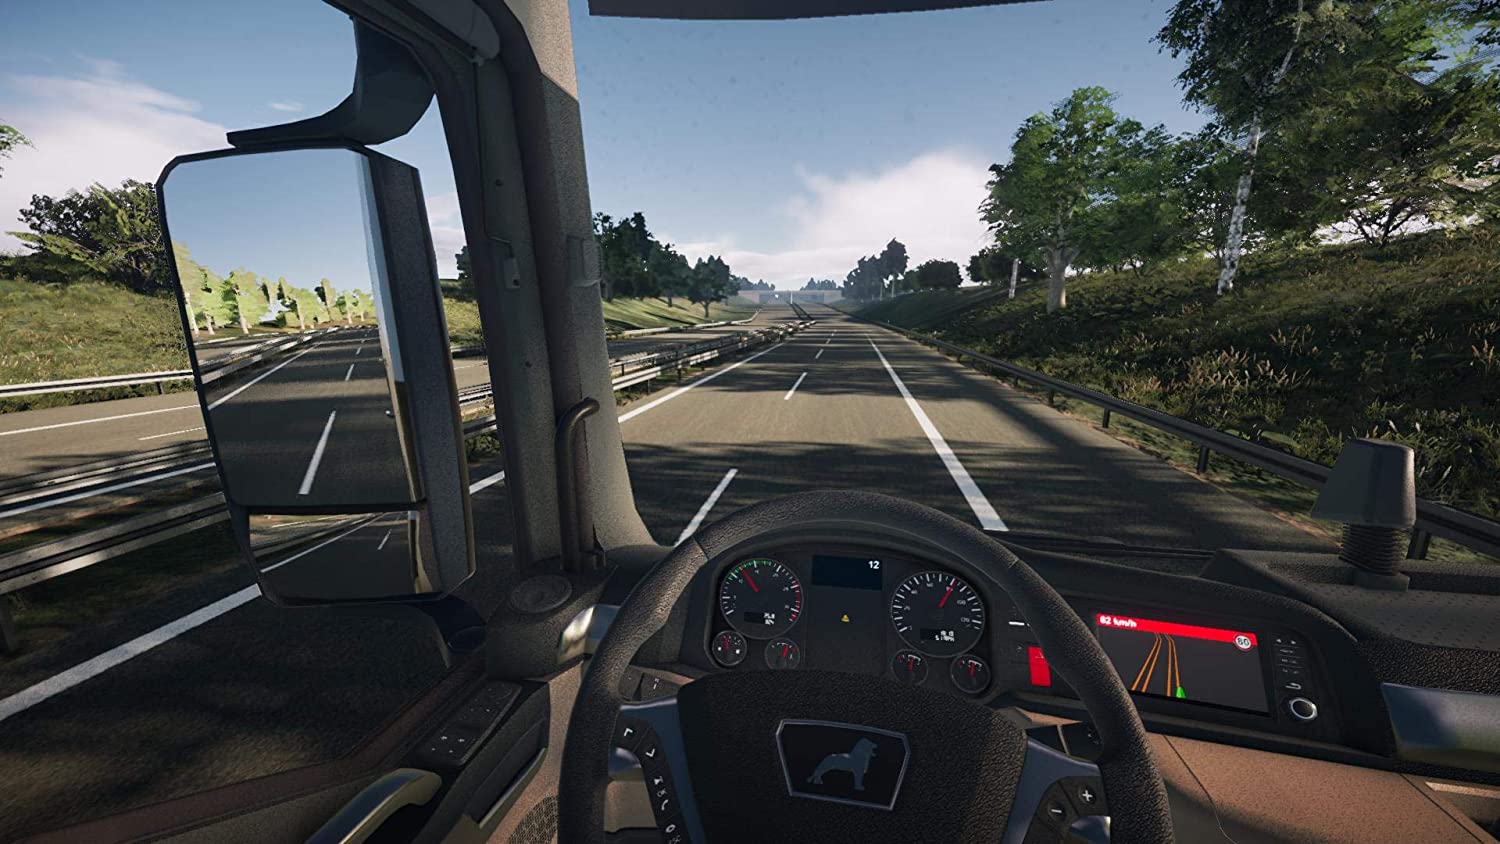 Симуляторы игры 2 купить. On the Road – Truck Simulation игра. Truck Simulator ps4. On the Road Truck Simulator для PLAYSTATION 4. Евро трак симулятор на ПС 4.